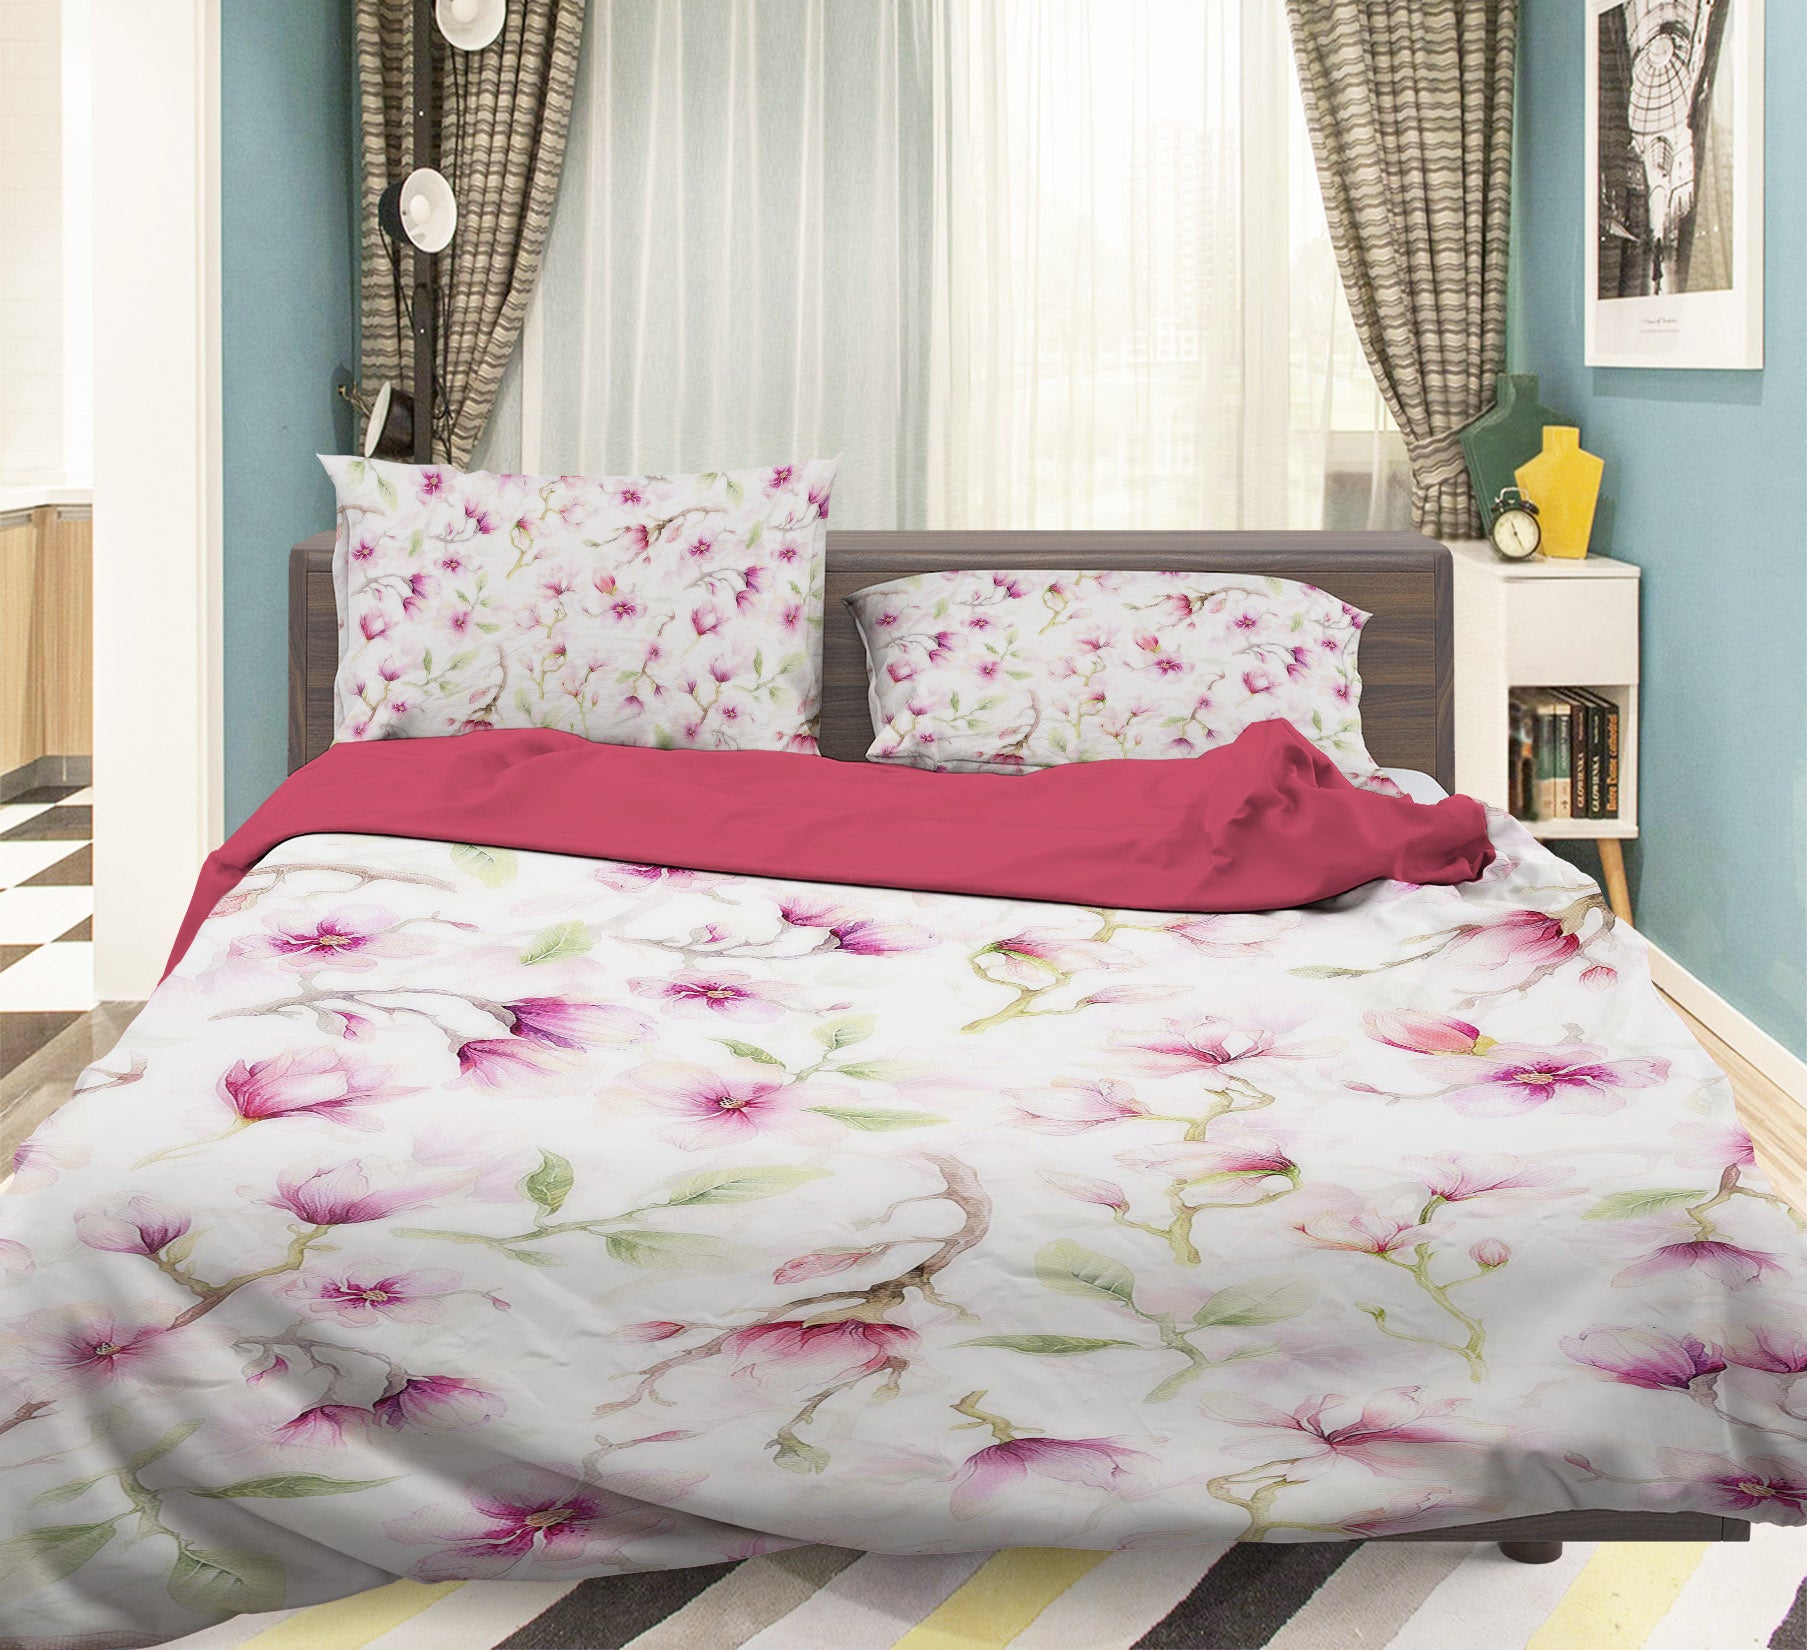 3D Flower Pattern 18199 Uta Naumann Bedding Bed Pillowcases Quilt